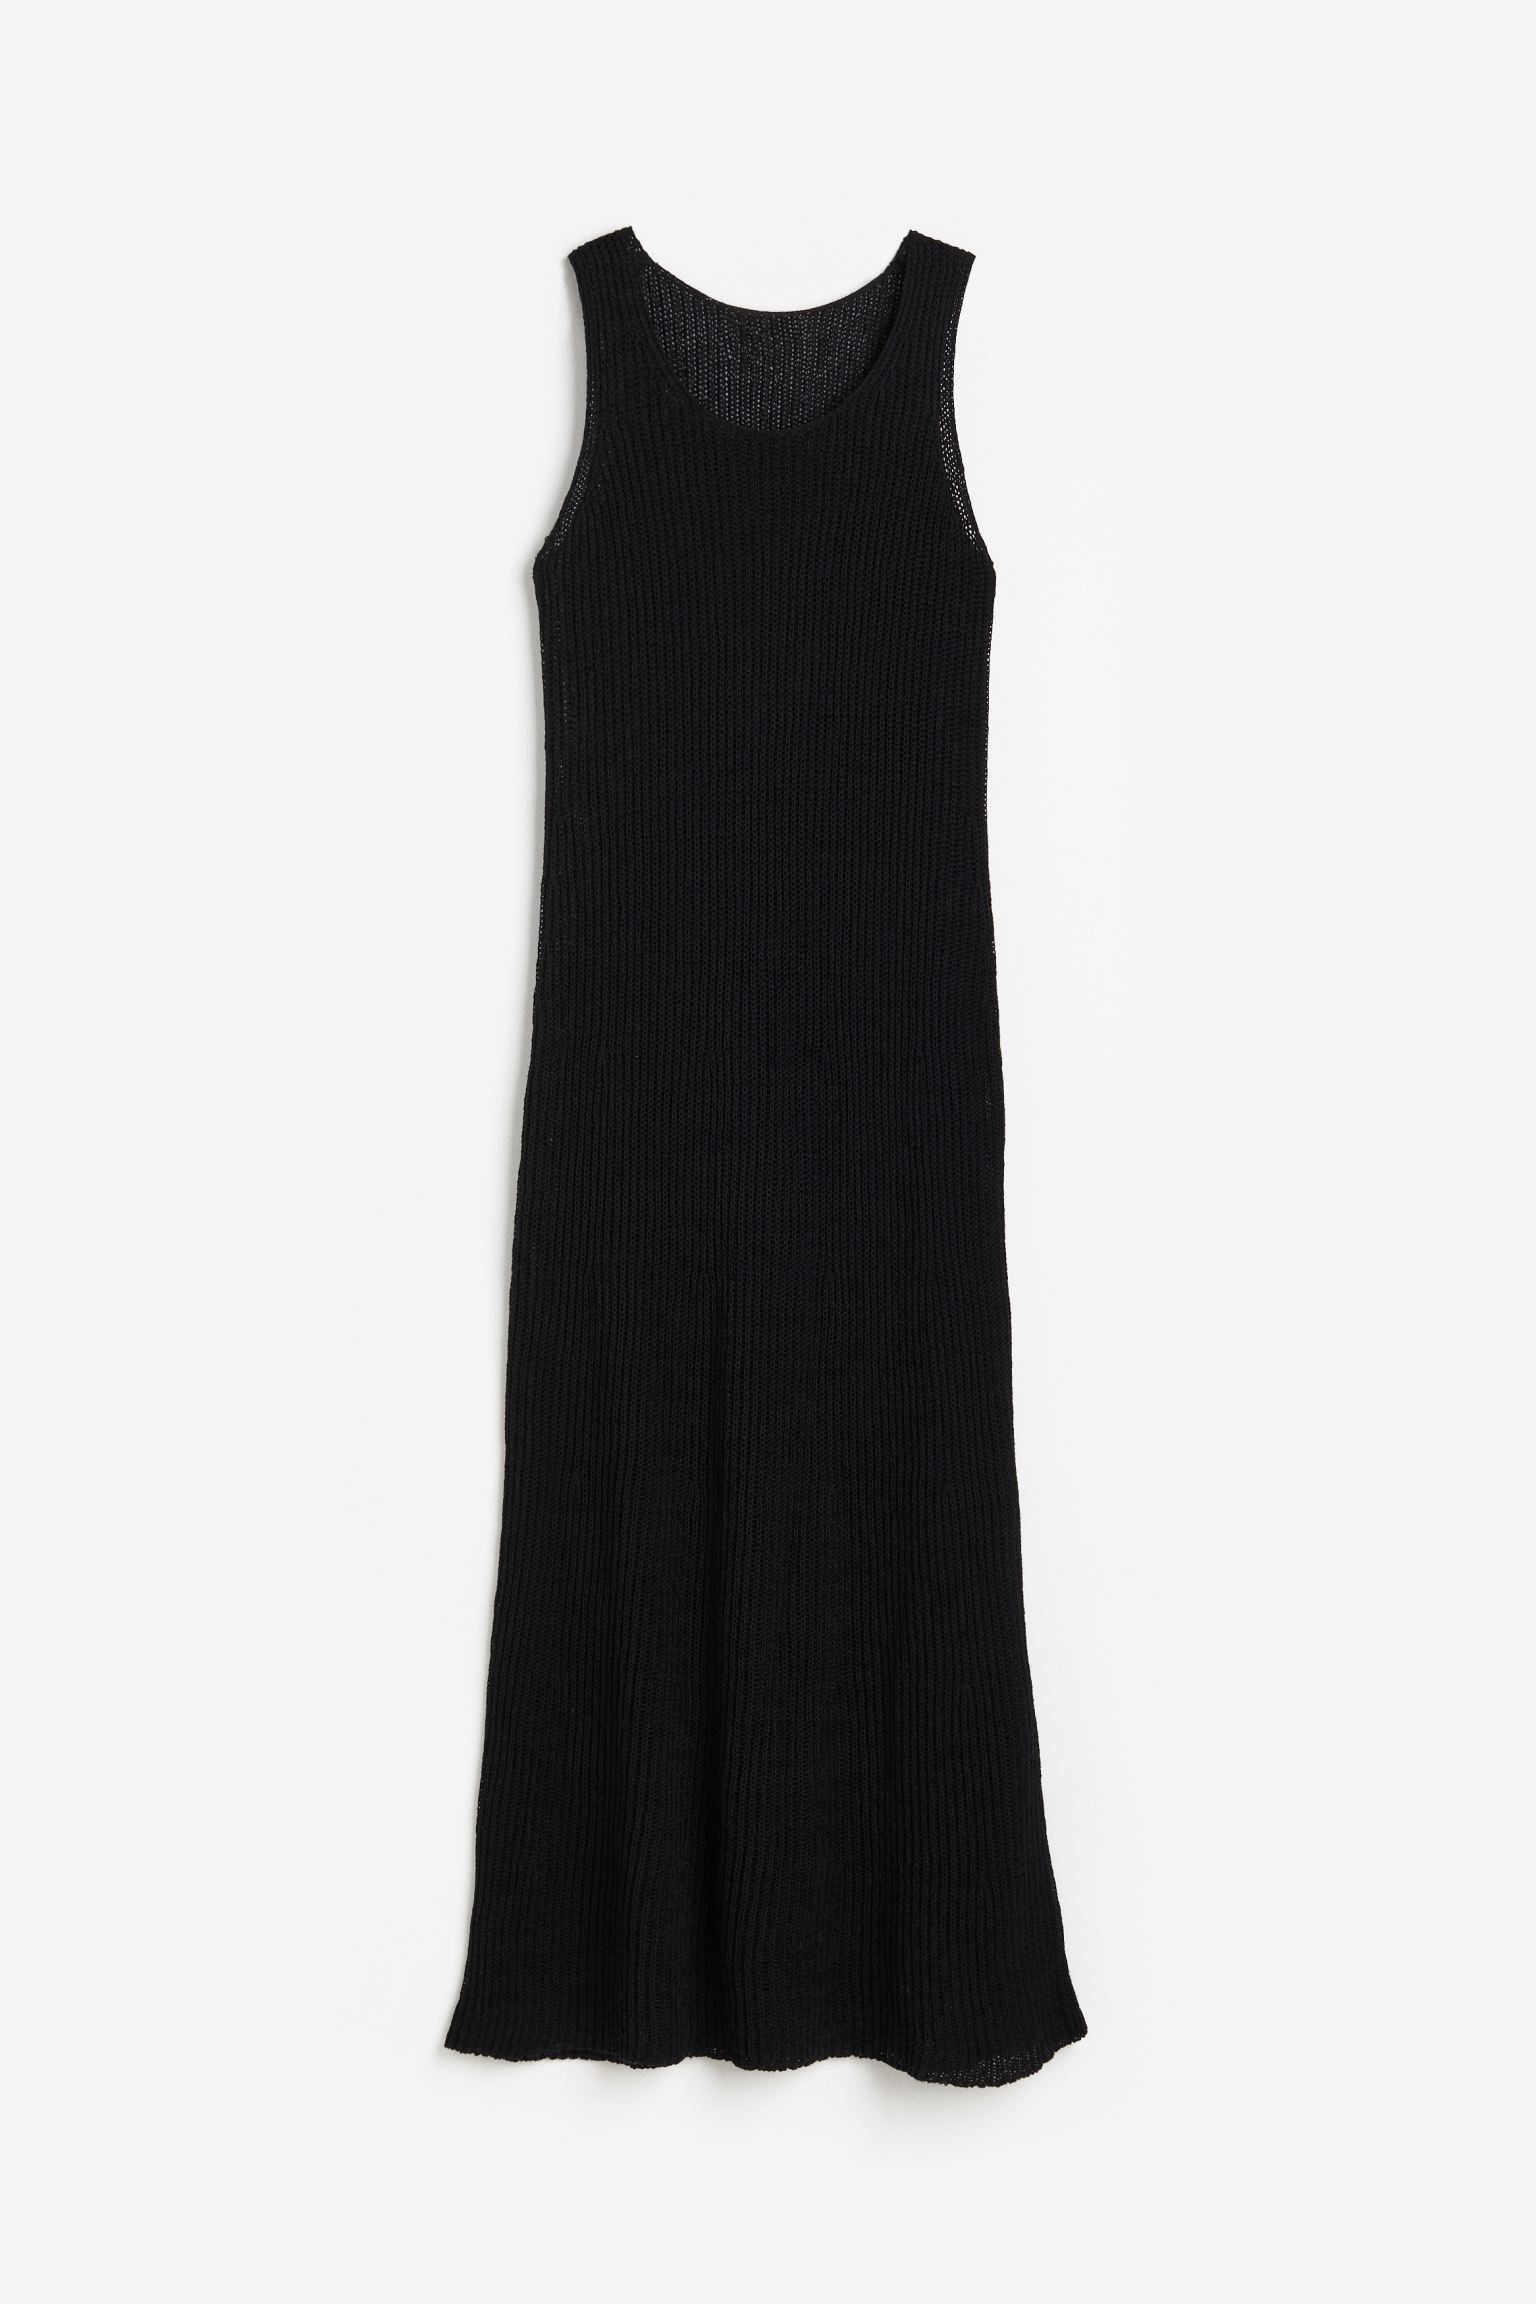 Платье женское H&M 1175439002 черное S (доставка из-за рубежа)